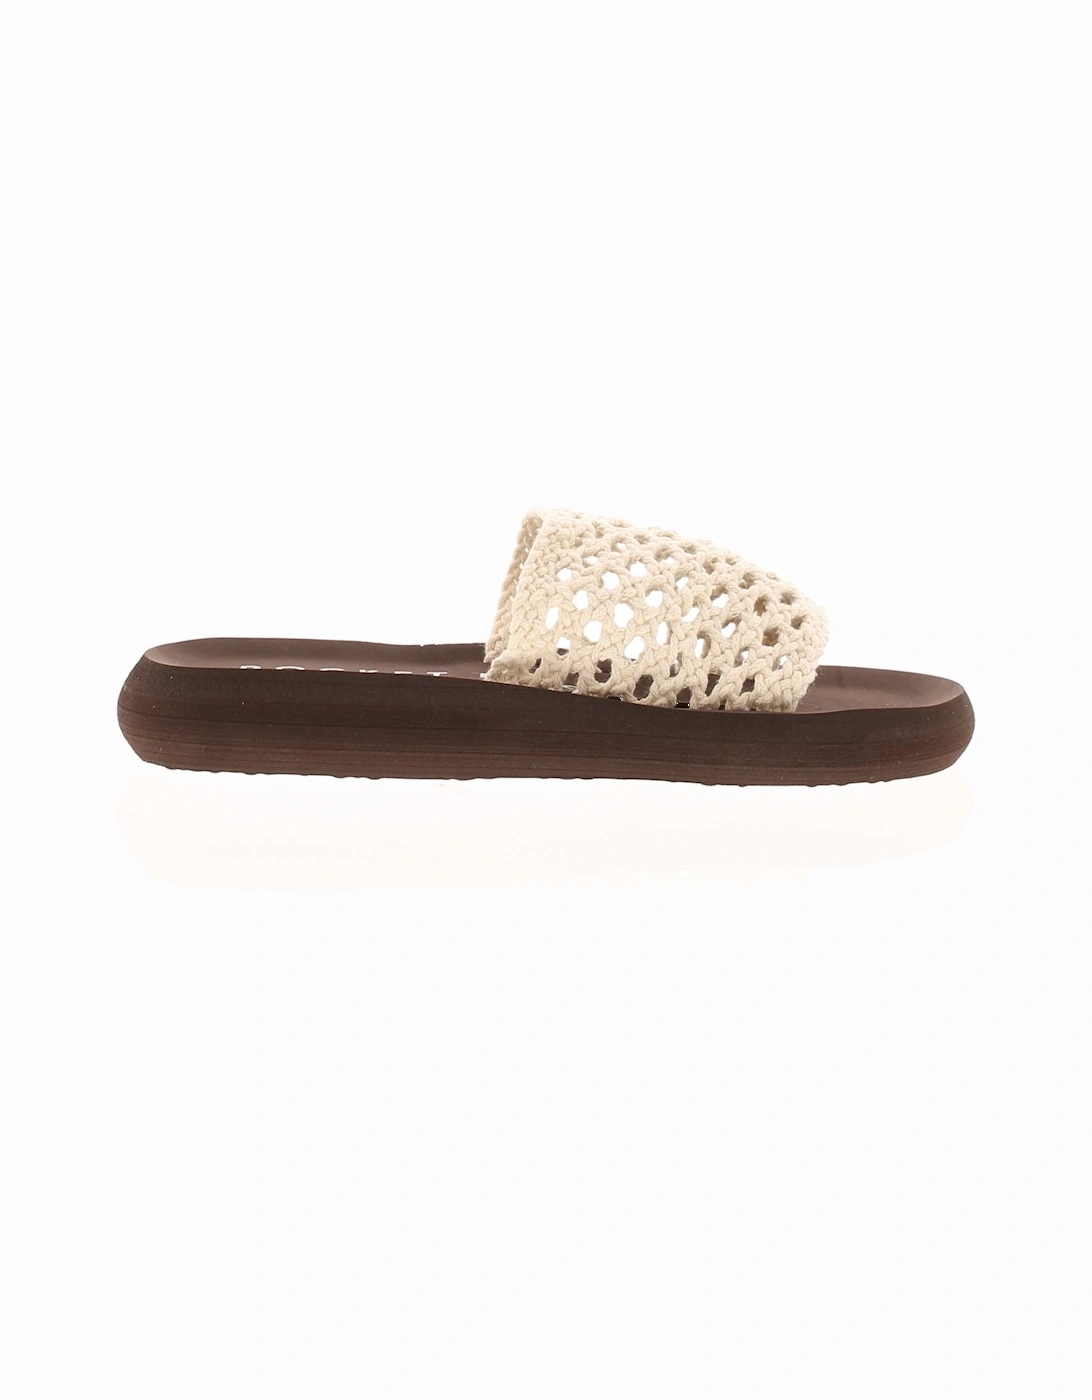 Womens Sandals Sunset Slide Flat Slip On Sliders White Brown UK Size